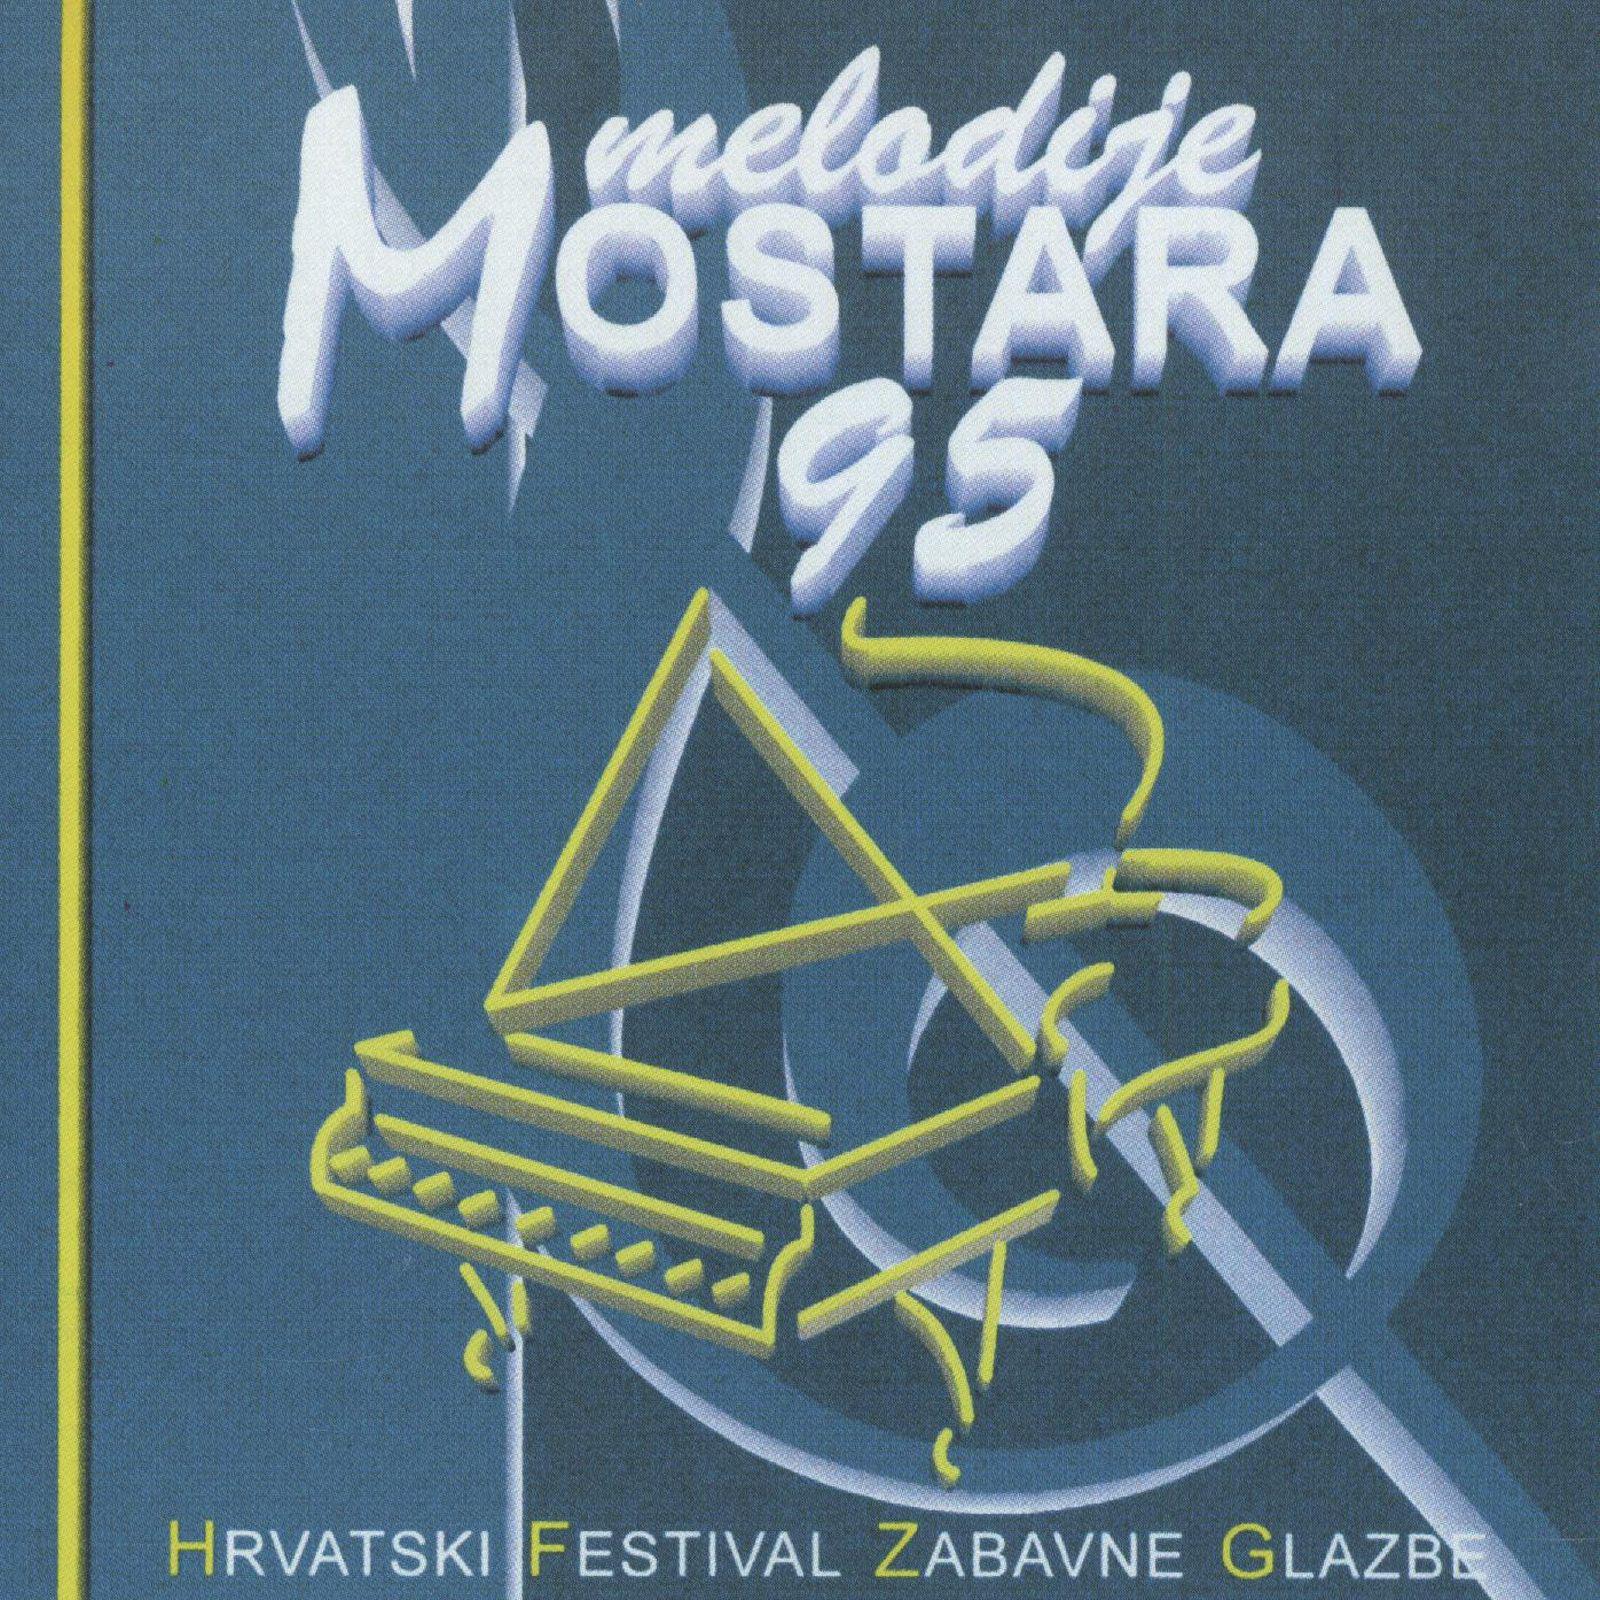 Melodije Mostara '95